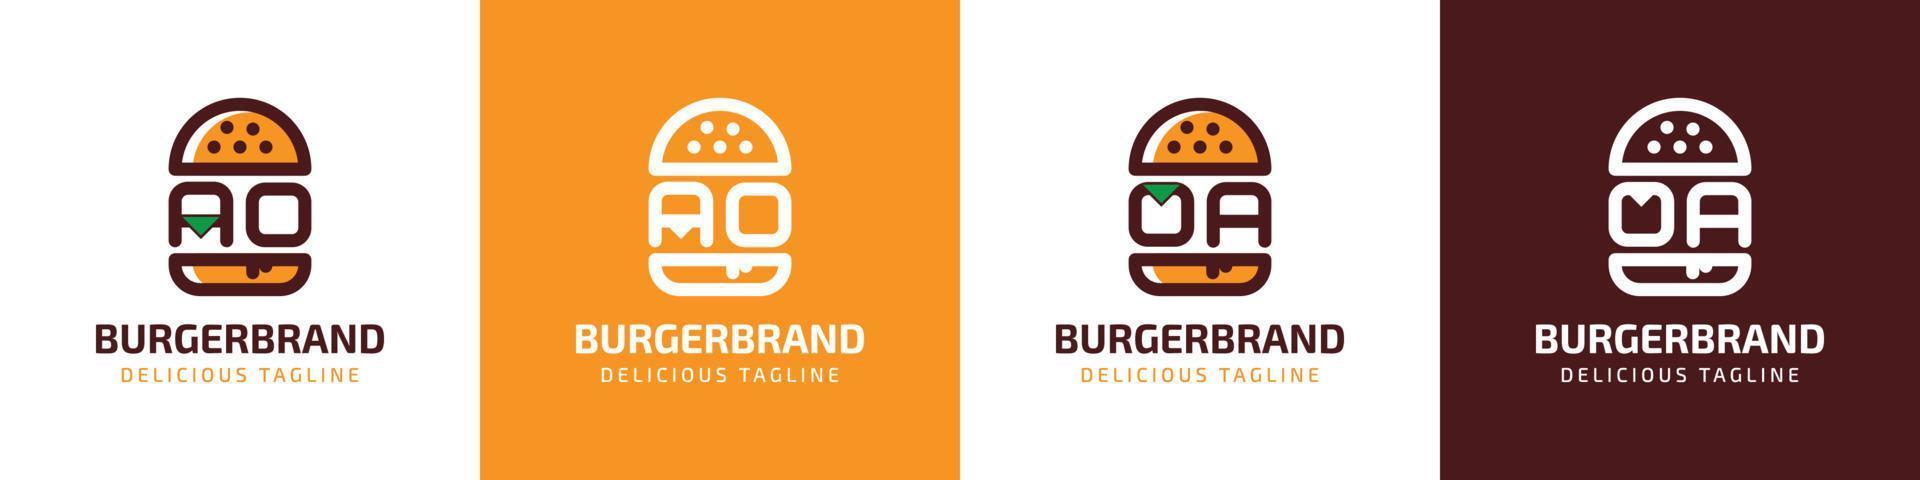 brev ao och oa burger logotyp, lämplig för några företag relaterad till burger med ao eller oa initialer. vektor